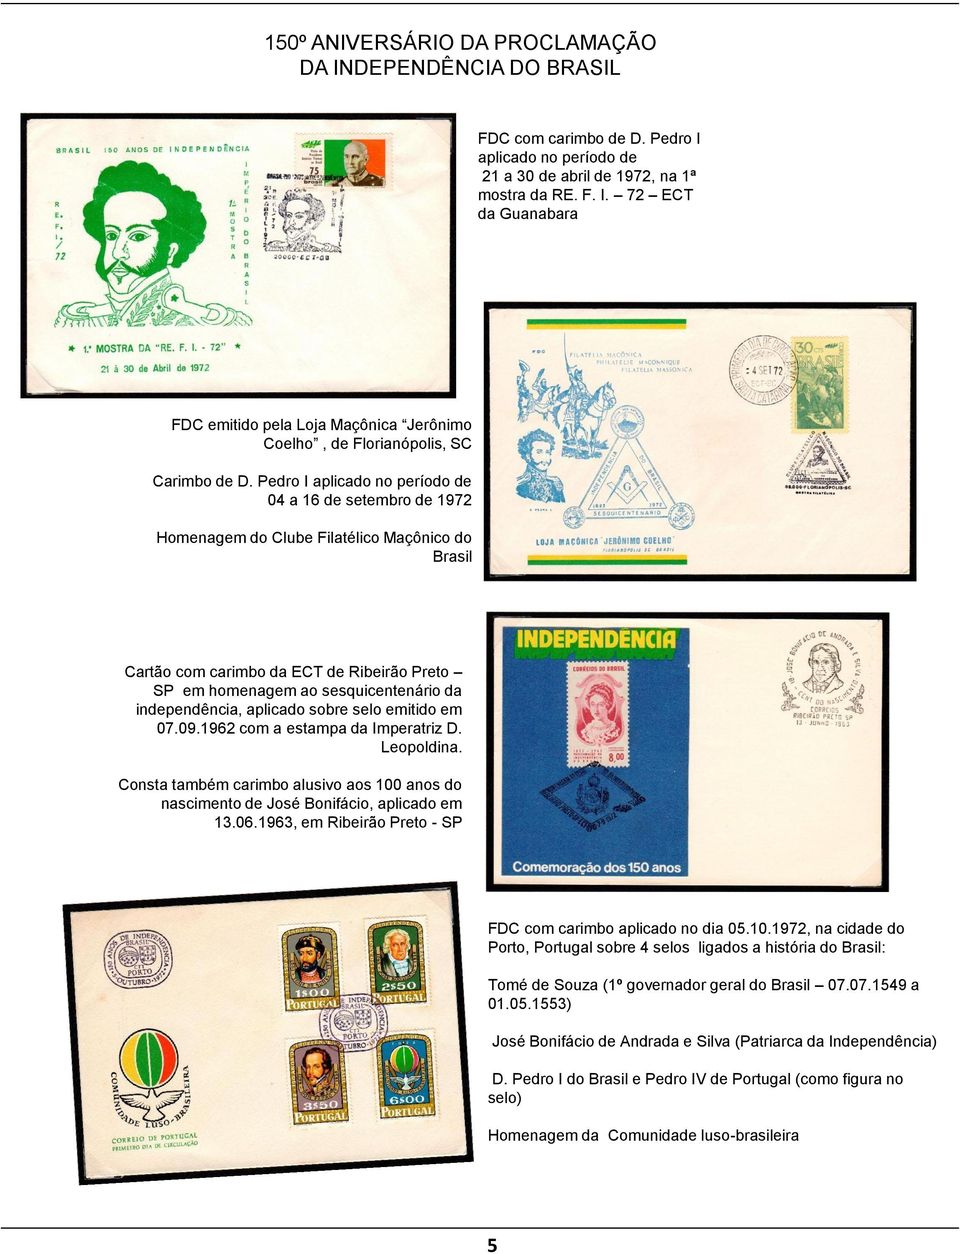 independência, aplicado sobre selo emitido em 07.09.1962 com a estampa da Imperatriz D. Leopoldina. Consta também carimbo alusivo aos 100 anos do nascimento de José Bonifácio, aplicado em 13.06.